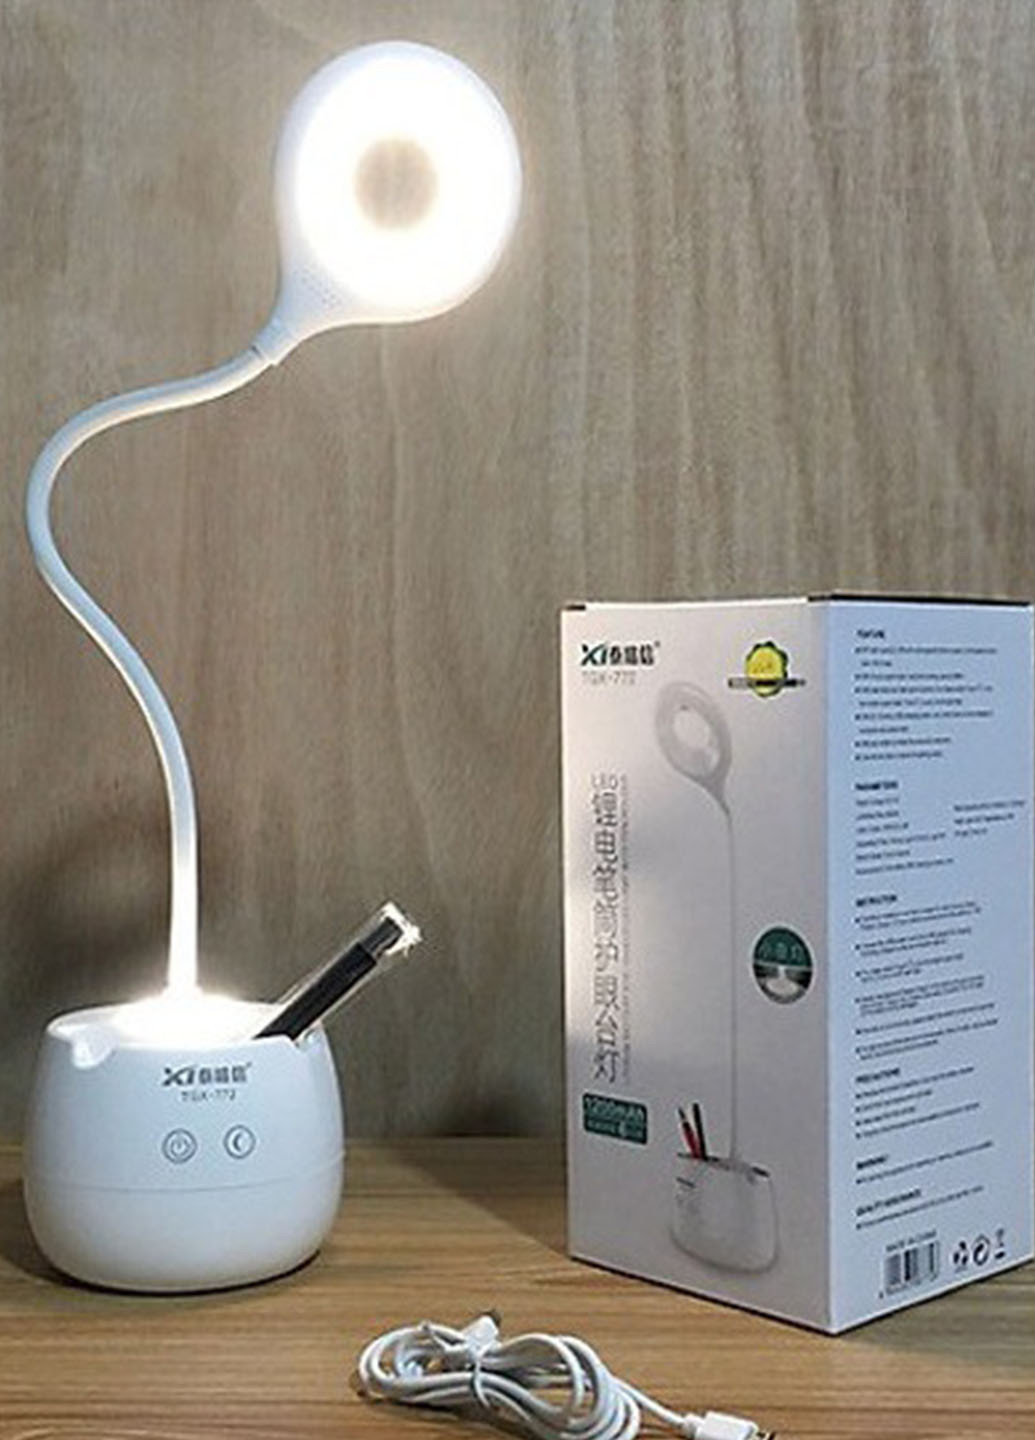 Лампа настольная светодиодная TAIGEXIN аккумуляторная 3 в 1 органайзер ночник и держатель для телефона Good Idea tgx-772 (266623071)